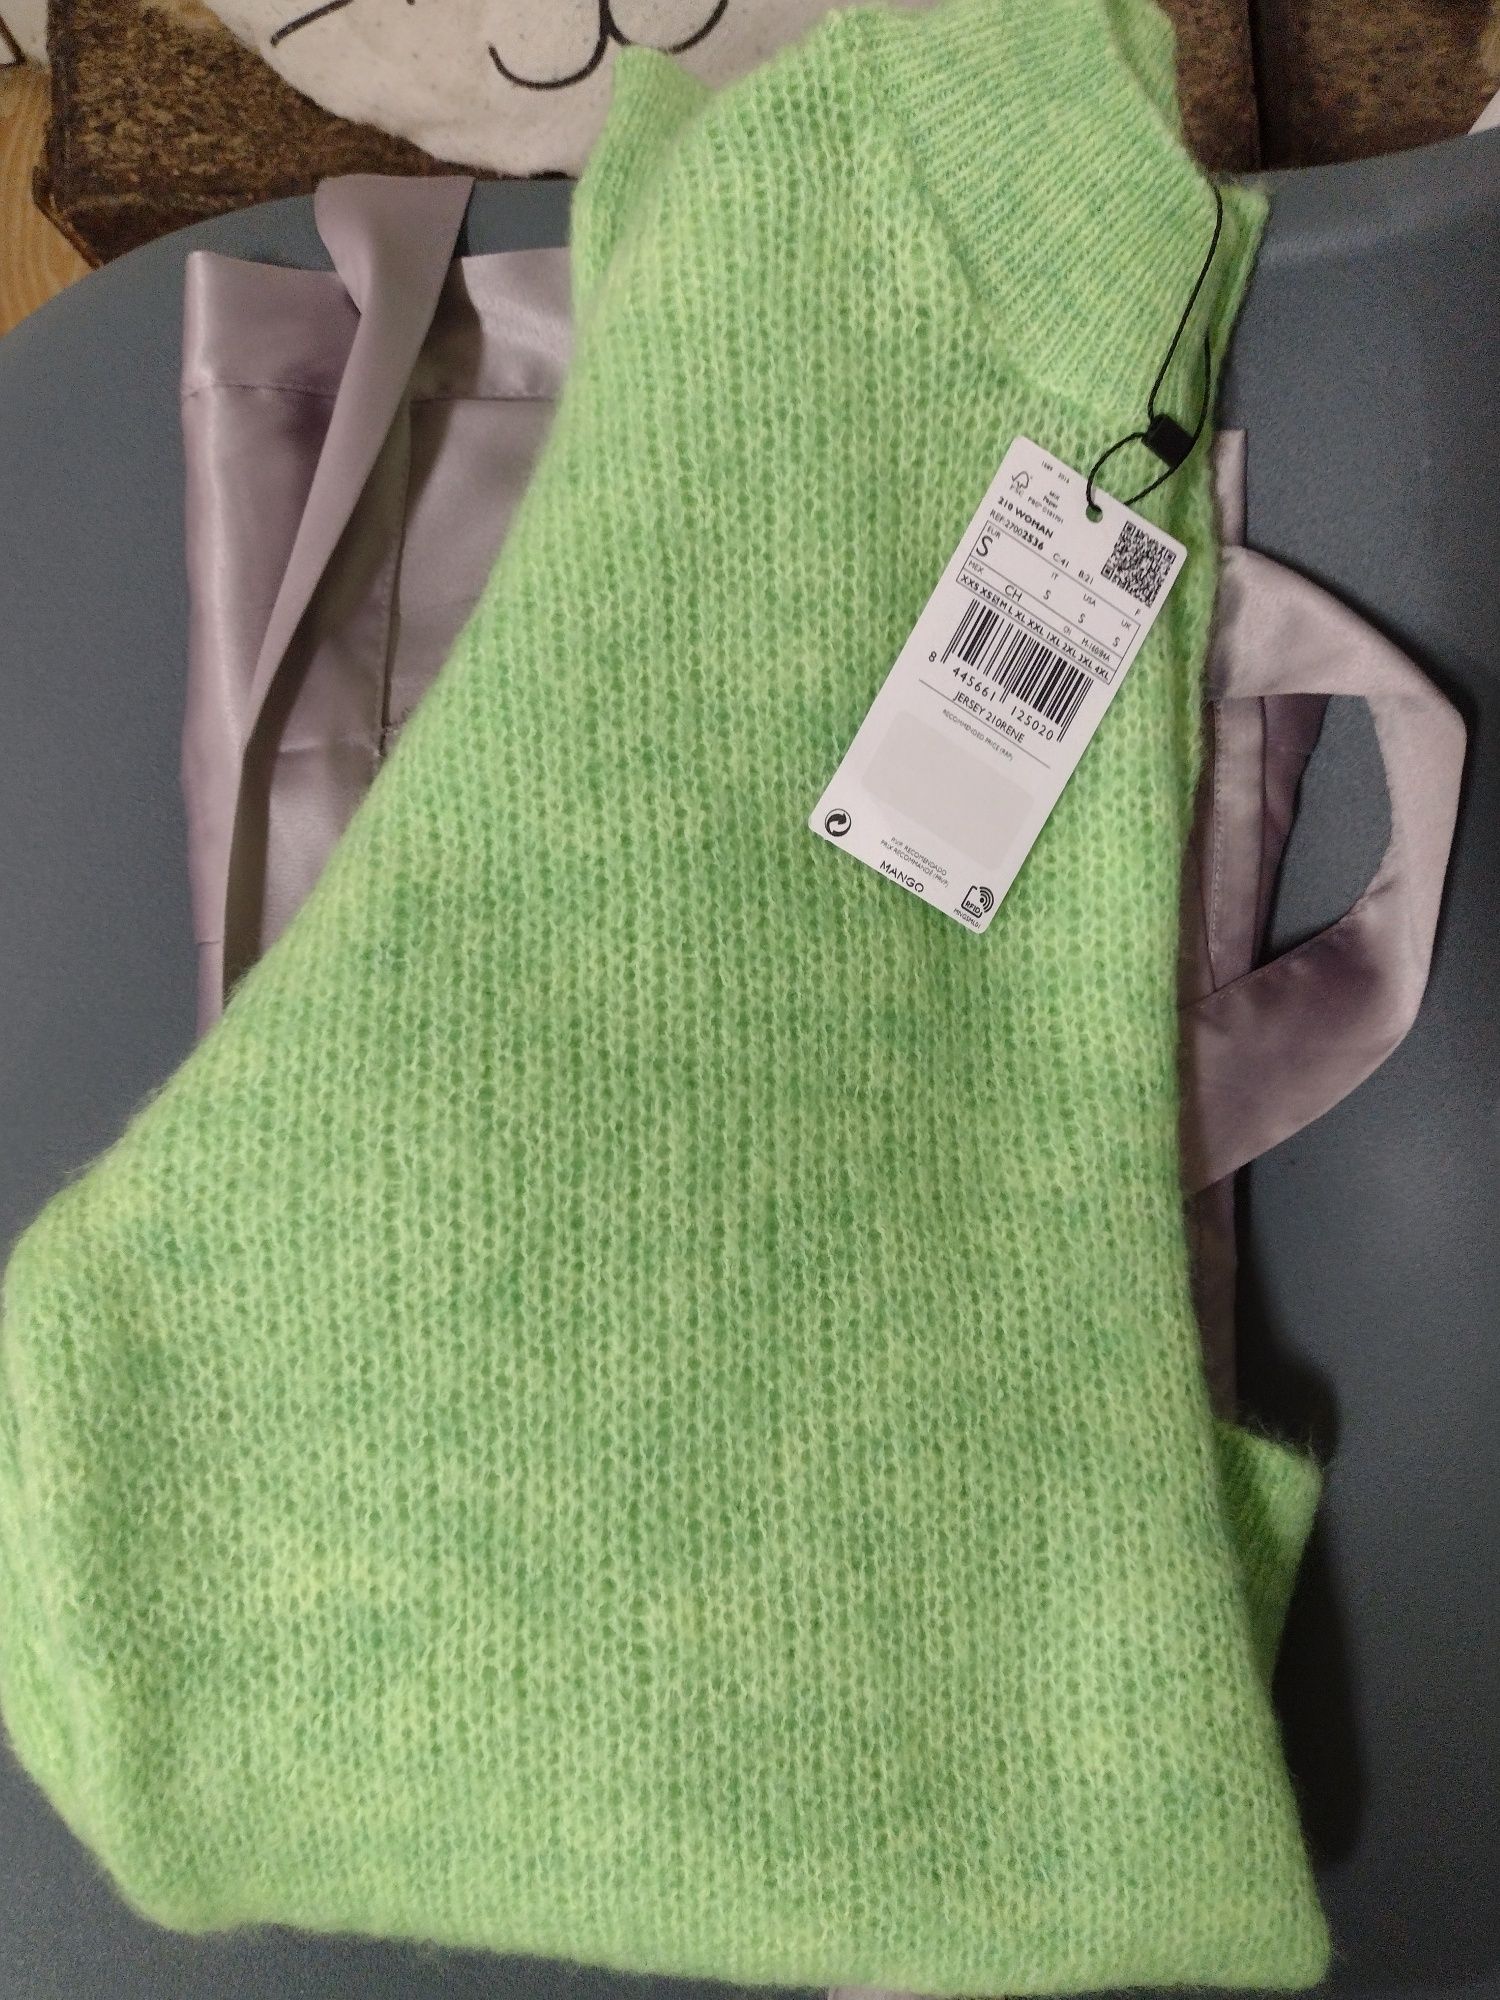 Camisola de Malha Verde Mango 

Tamanho S

Novo com etiqueta.

Vendo p